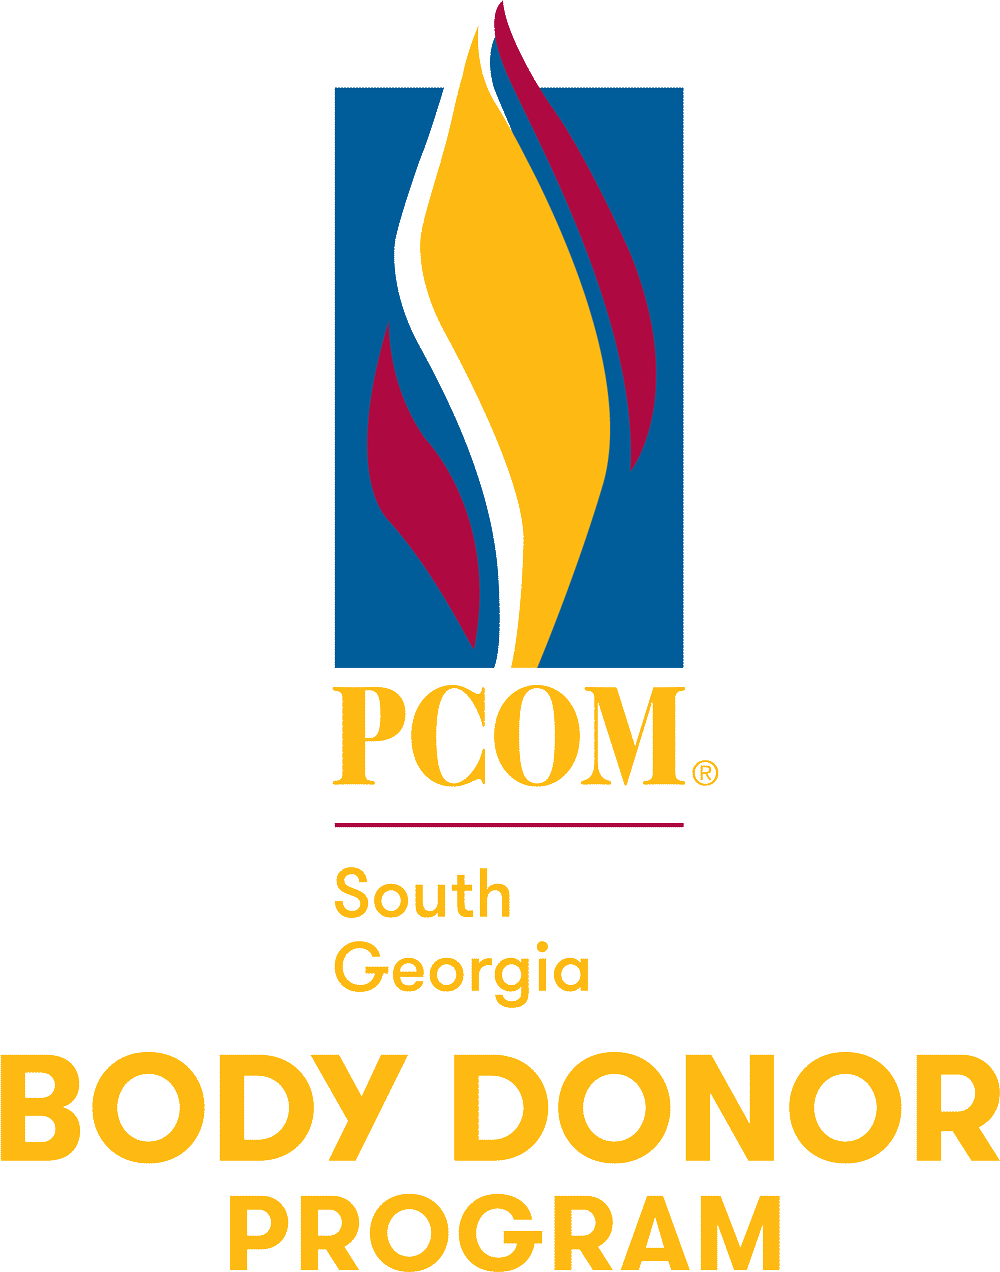 PCOM South Georgia Body Donor Program logo